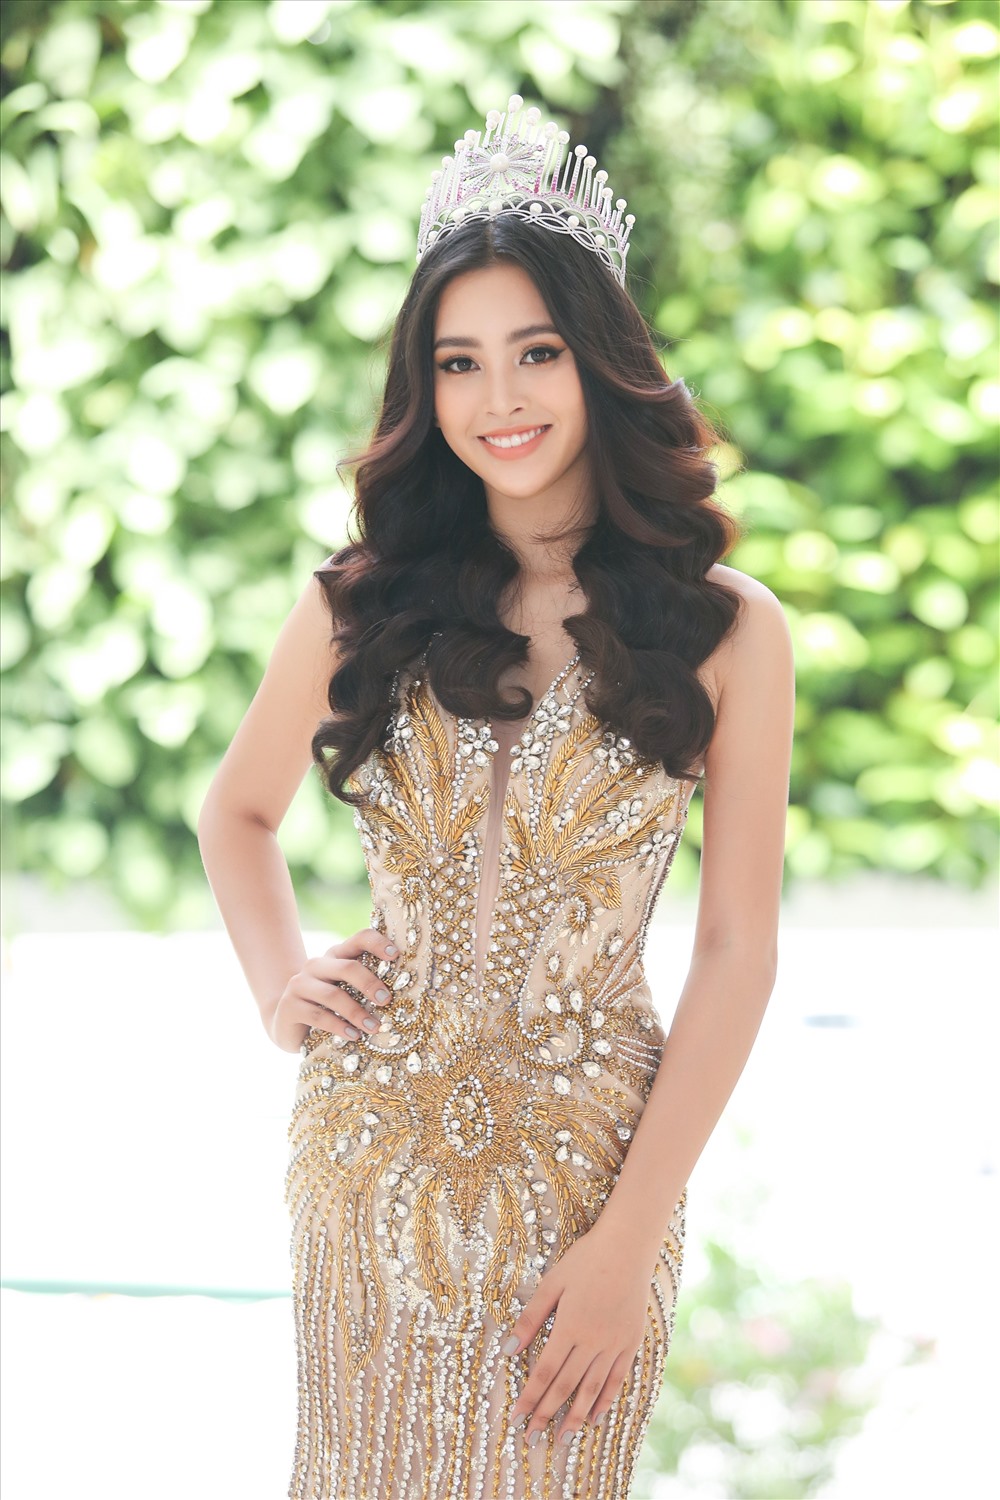 Sáng 22.4, Hoa hậu Tiểu Vy xuất hiện rạng rỡ tại họp báo cuộc thi “Hoa hậu Thế giới Việt Nam - Miss World Viet Nam“. Hoa hậu 18 tuổi nhận được nhiều lời khen về nhan sắc ngày một thăng hạng. 